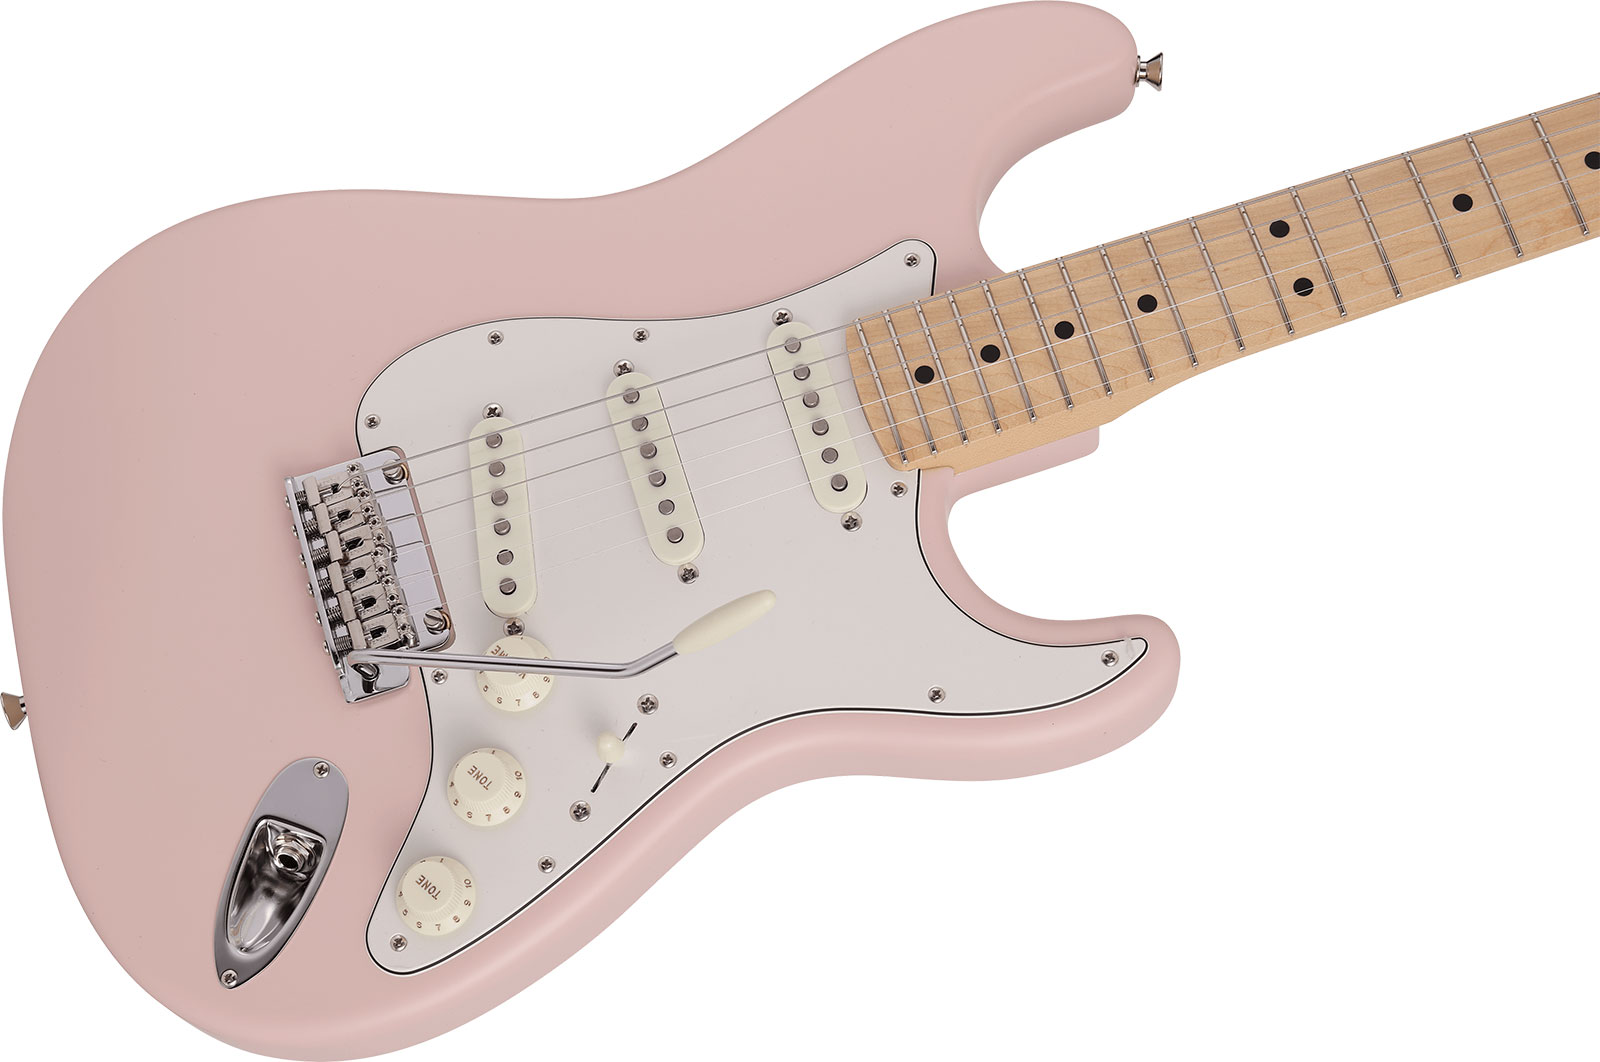 Fender Strat Junior Mij Jap 3s Trem Rw - Satin Shell Pink - E-Gitarre für Kinder - Variation 2